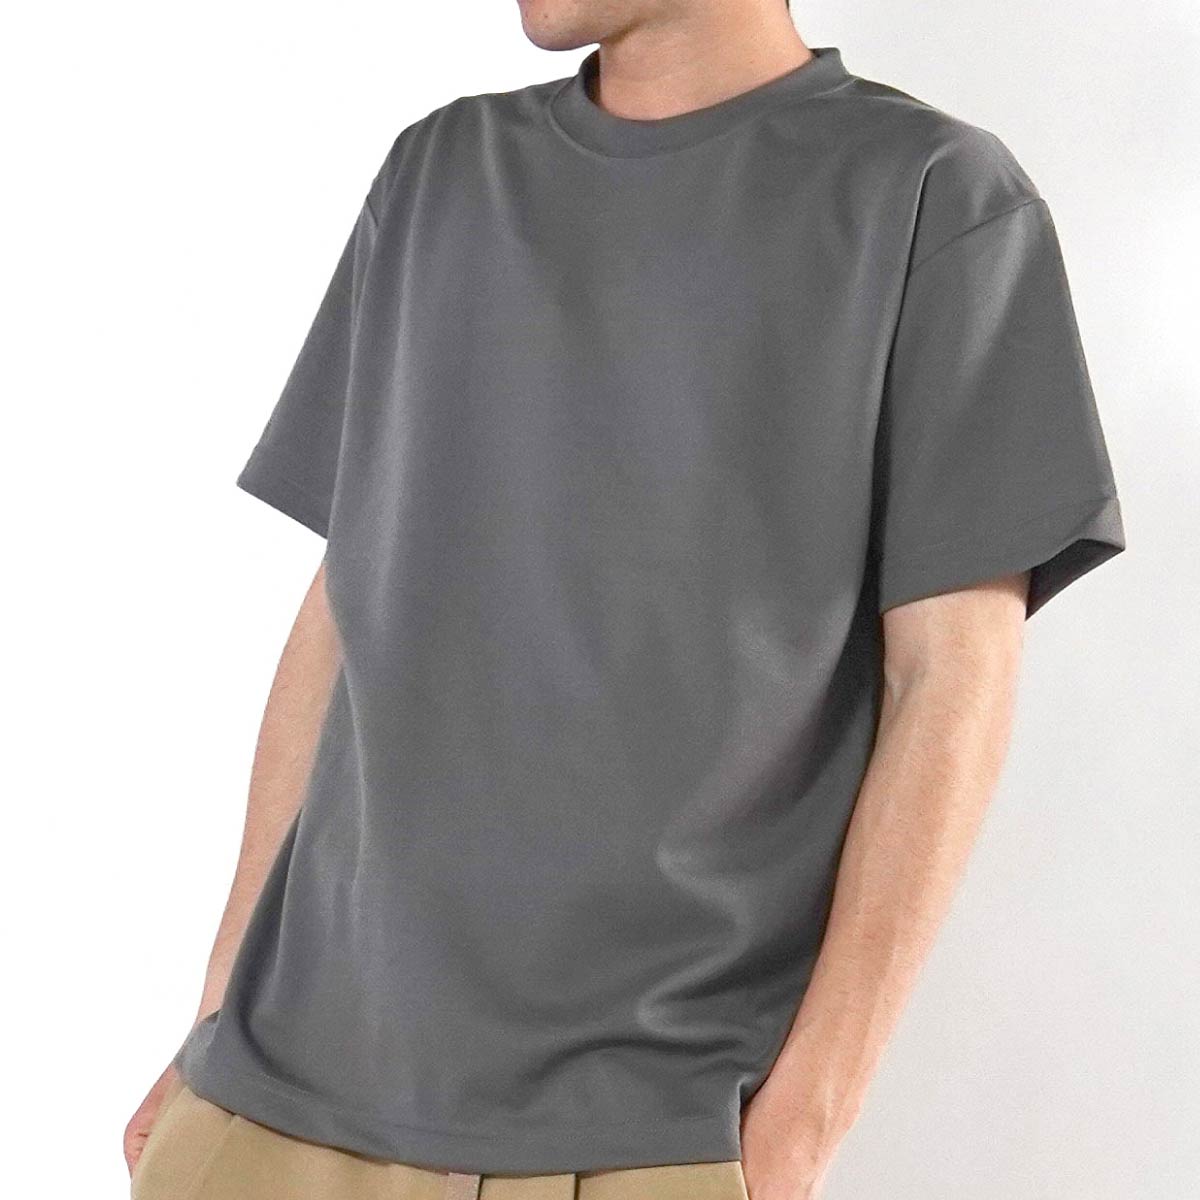 ファイバーTシャツ | ビッグサイズ | 1枚 | POT-104 | ライム